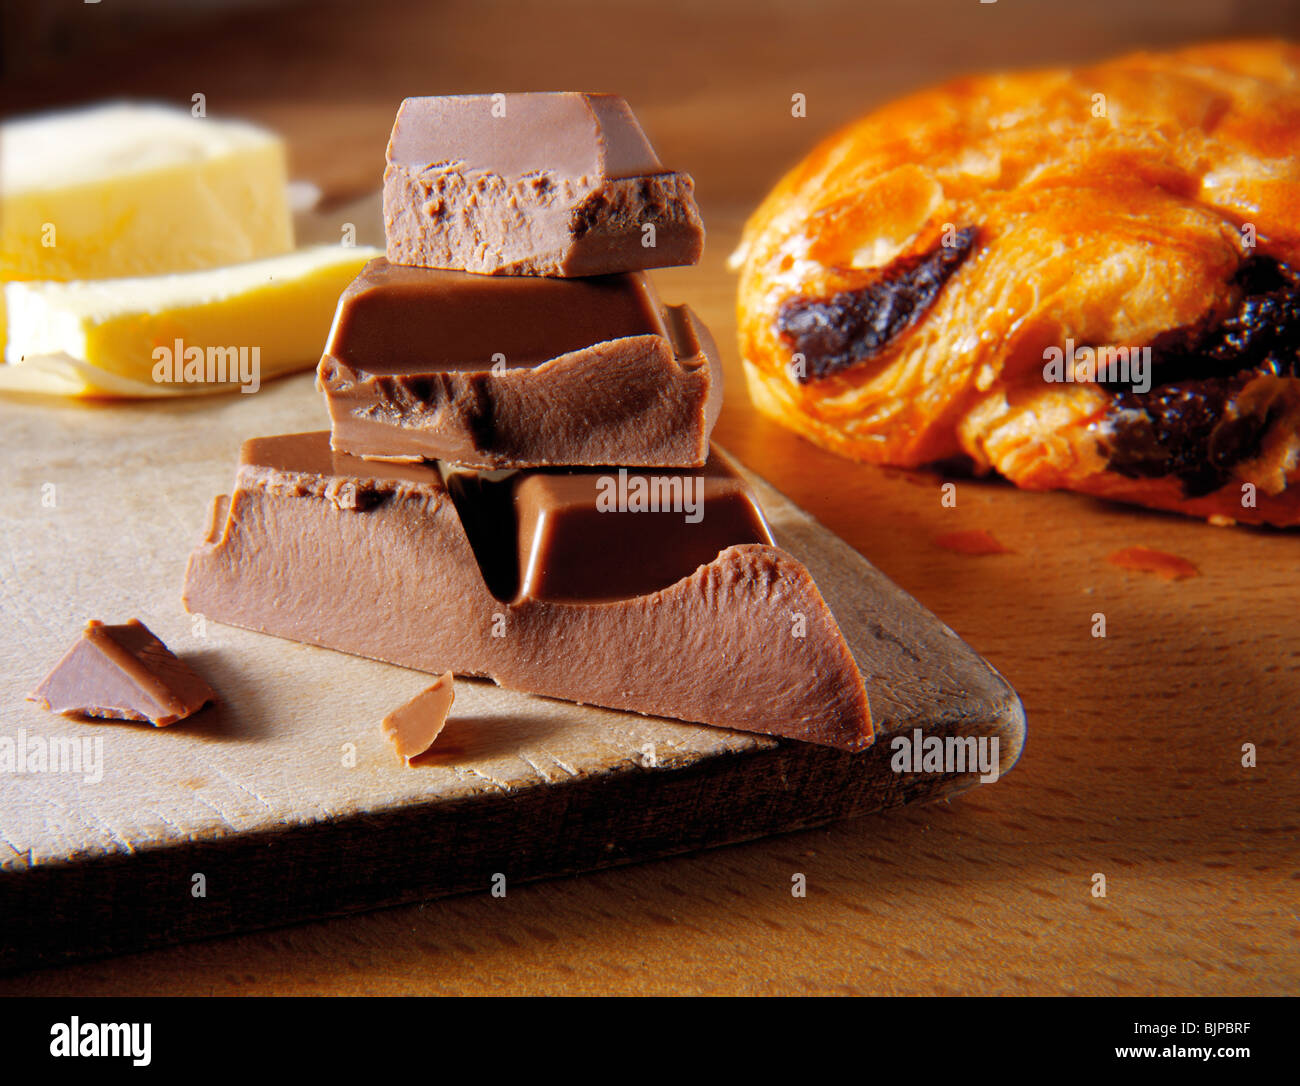 Schokoladenstücke mit einem Schoko-Croissant. Essen Fotos Stockfoto